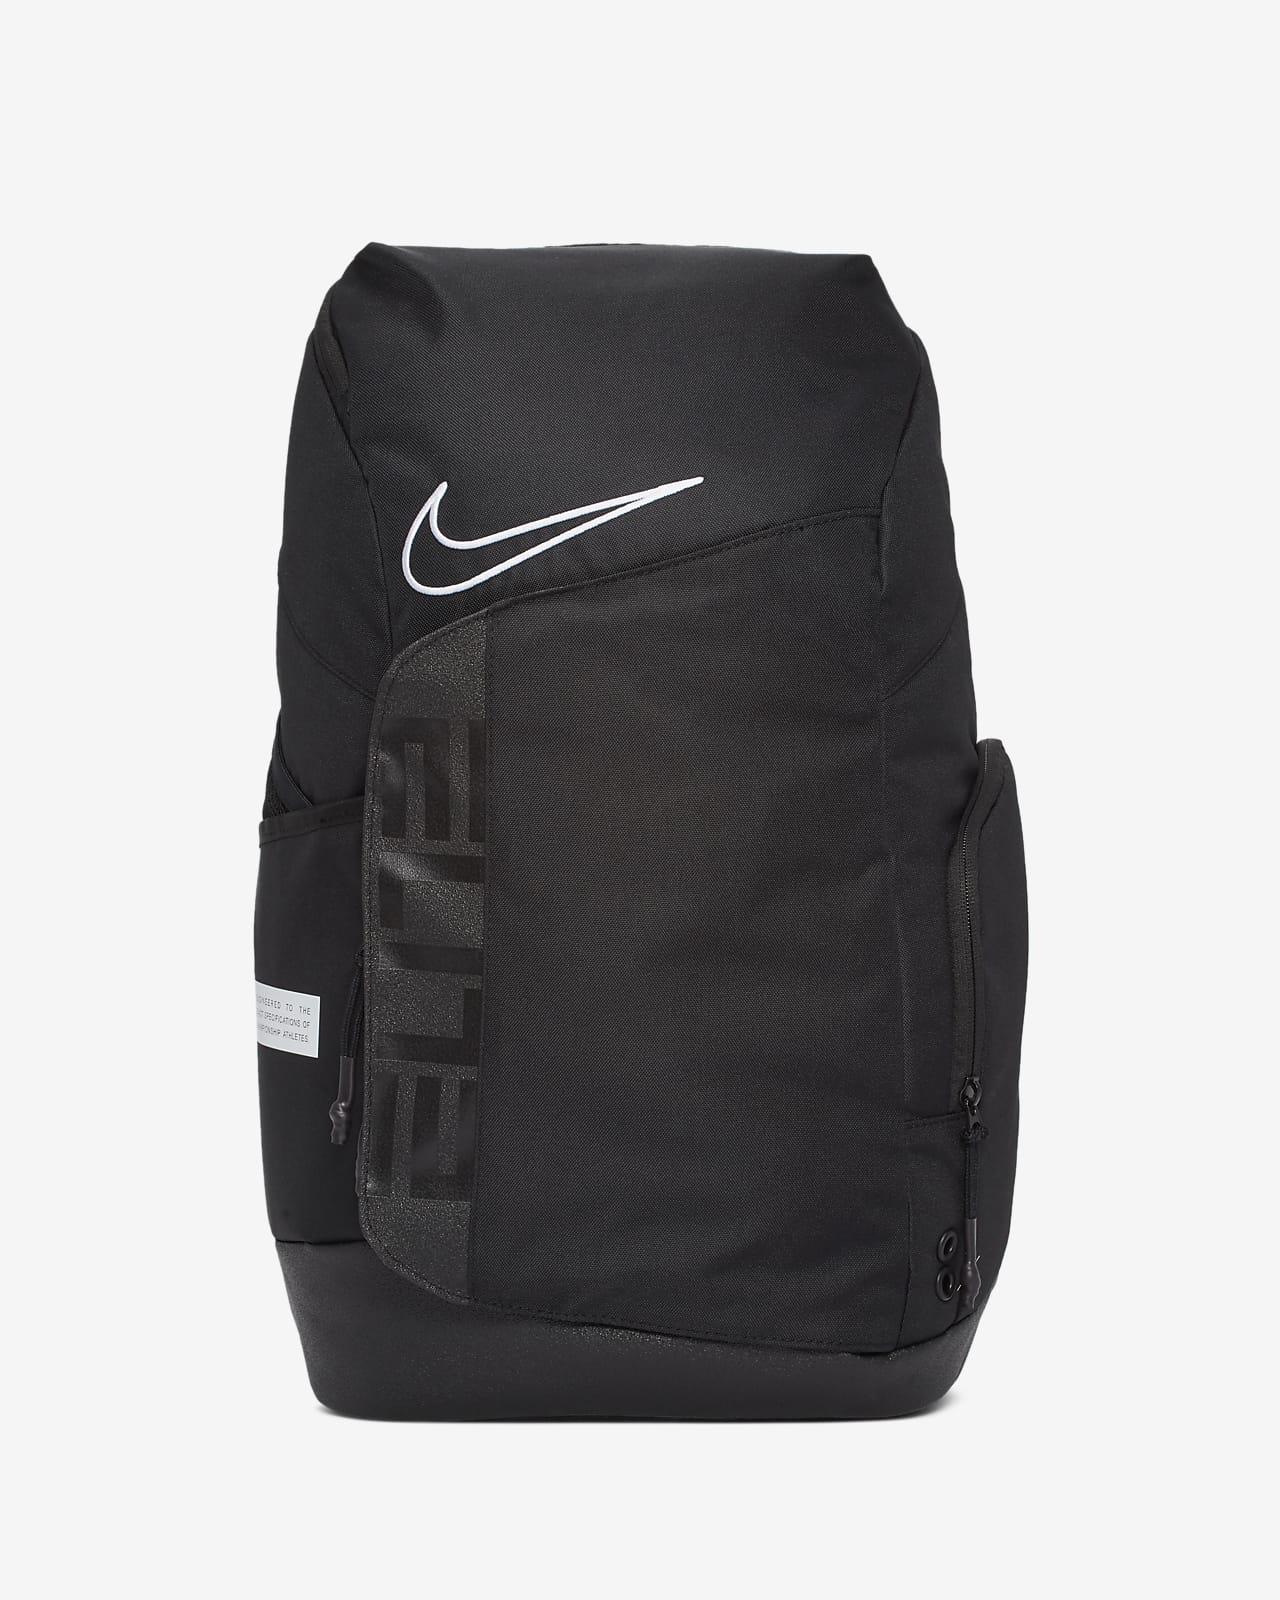 backpack nike price